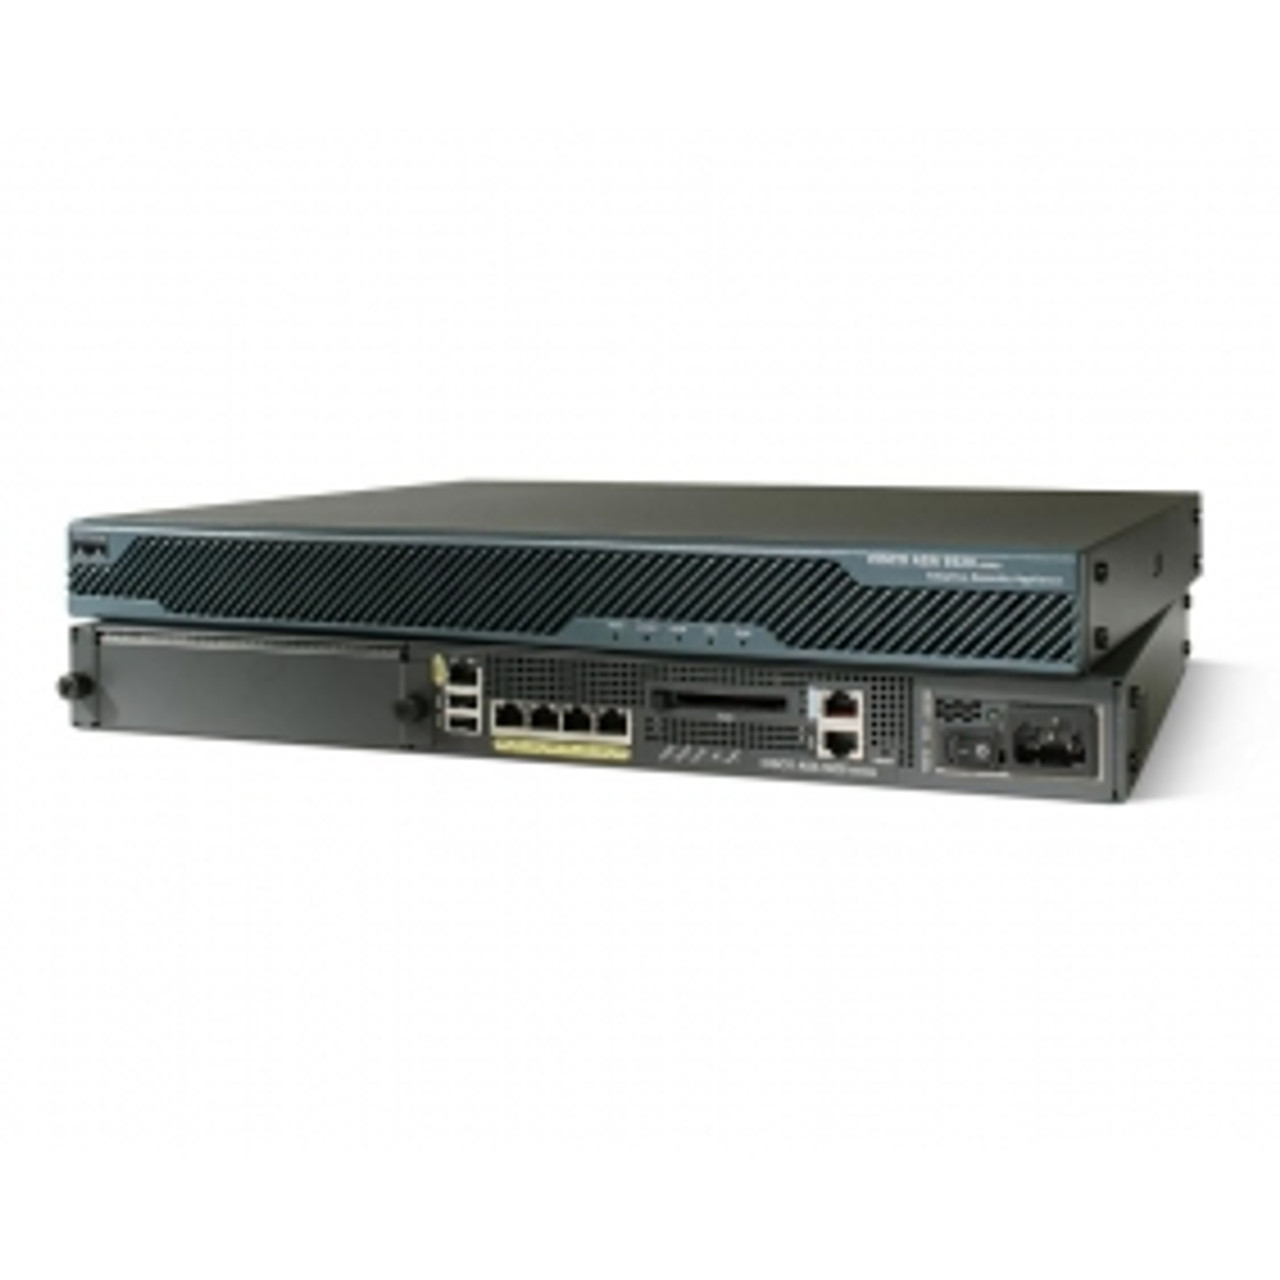 Cisco ASA 5520 Security Appliance